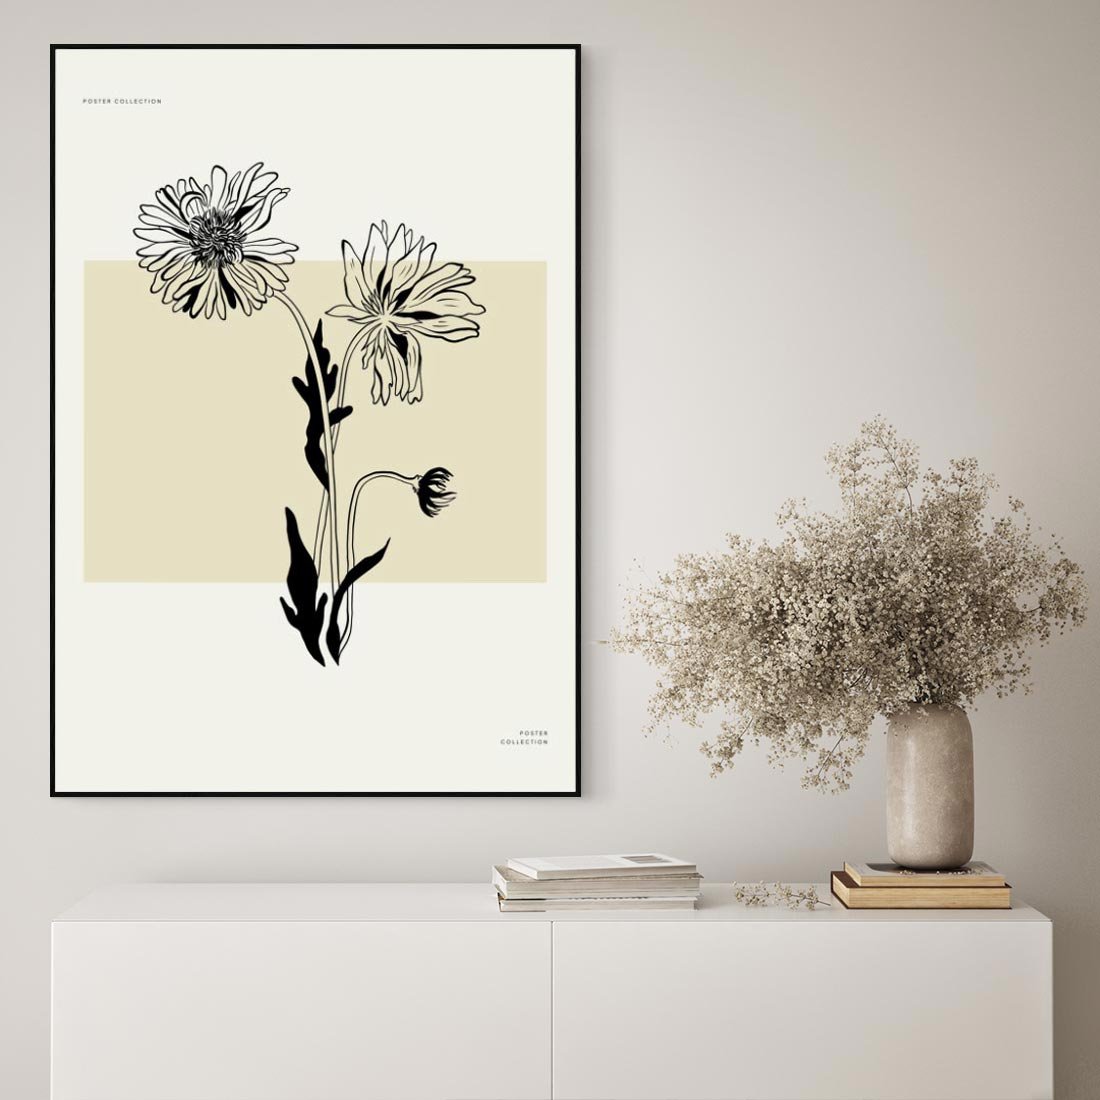 Obraz w ramie 50x70 - Kwiatowe Płótno - kwiaty, typografia - rama czarna